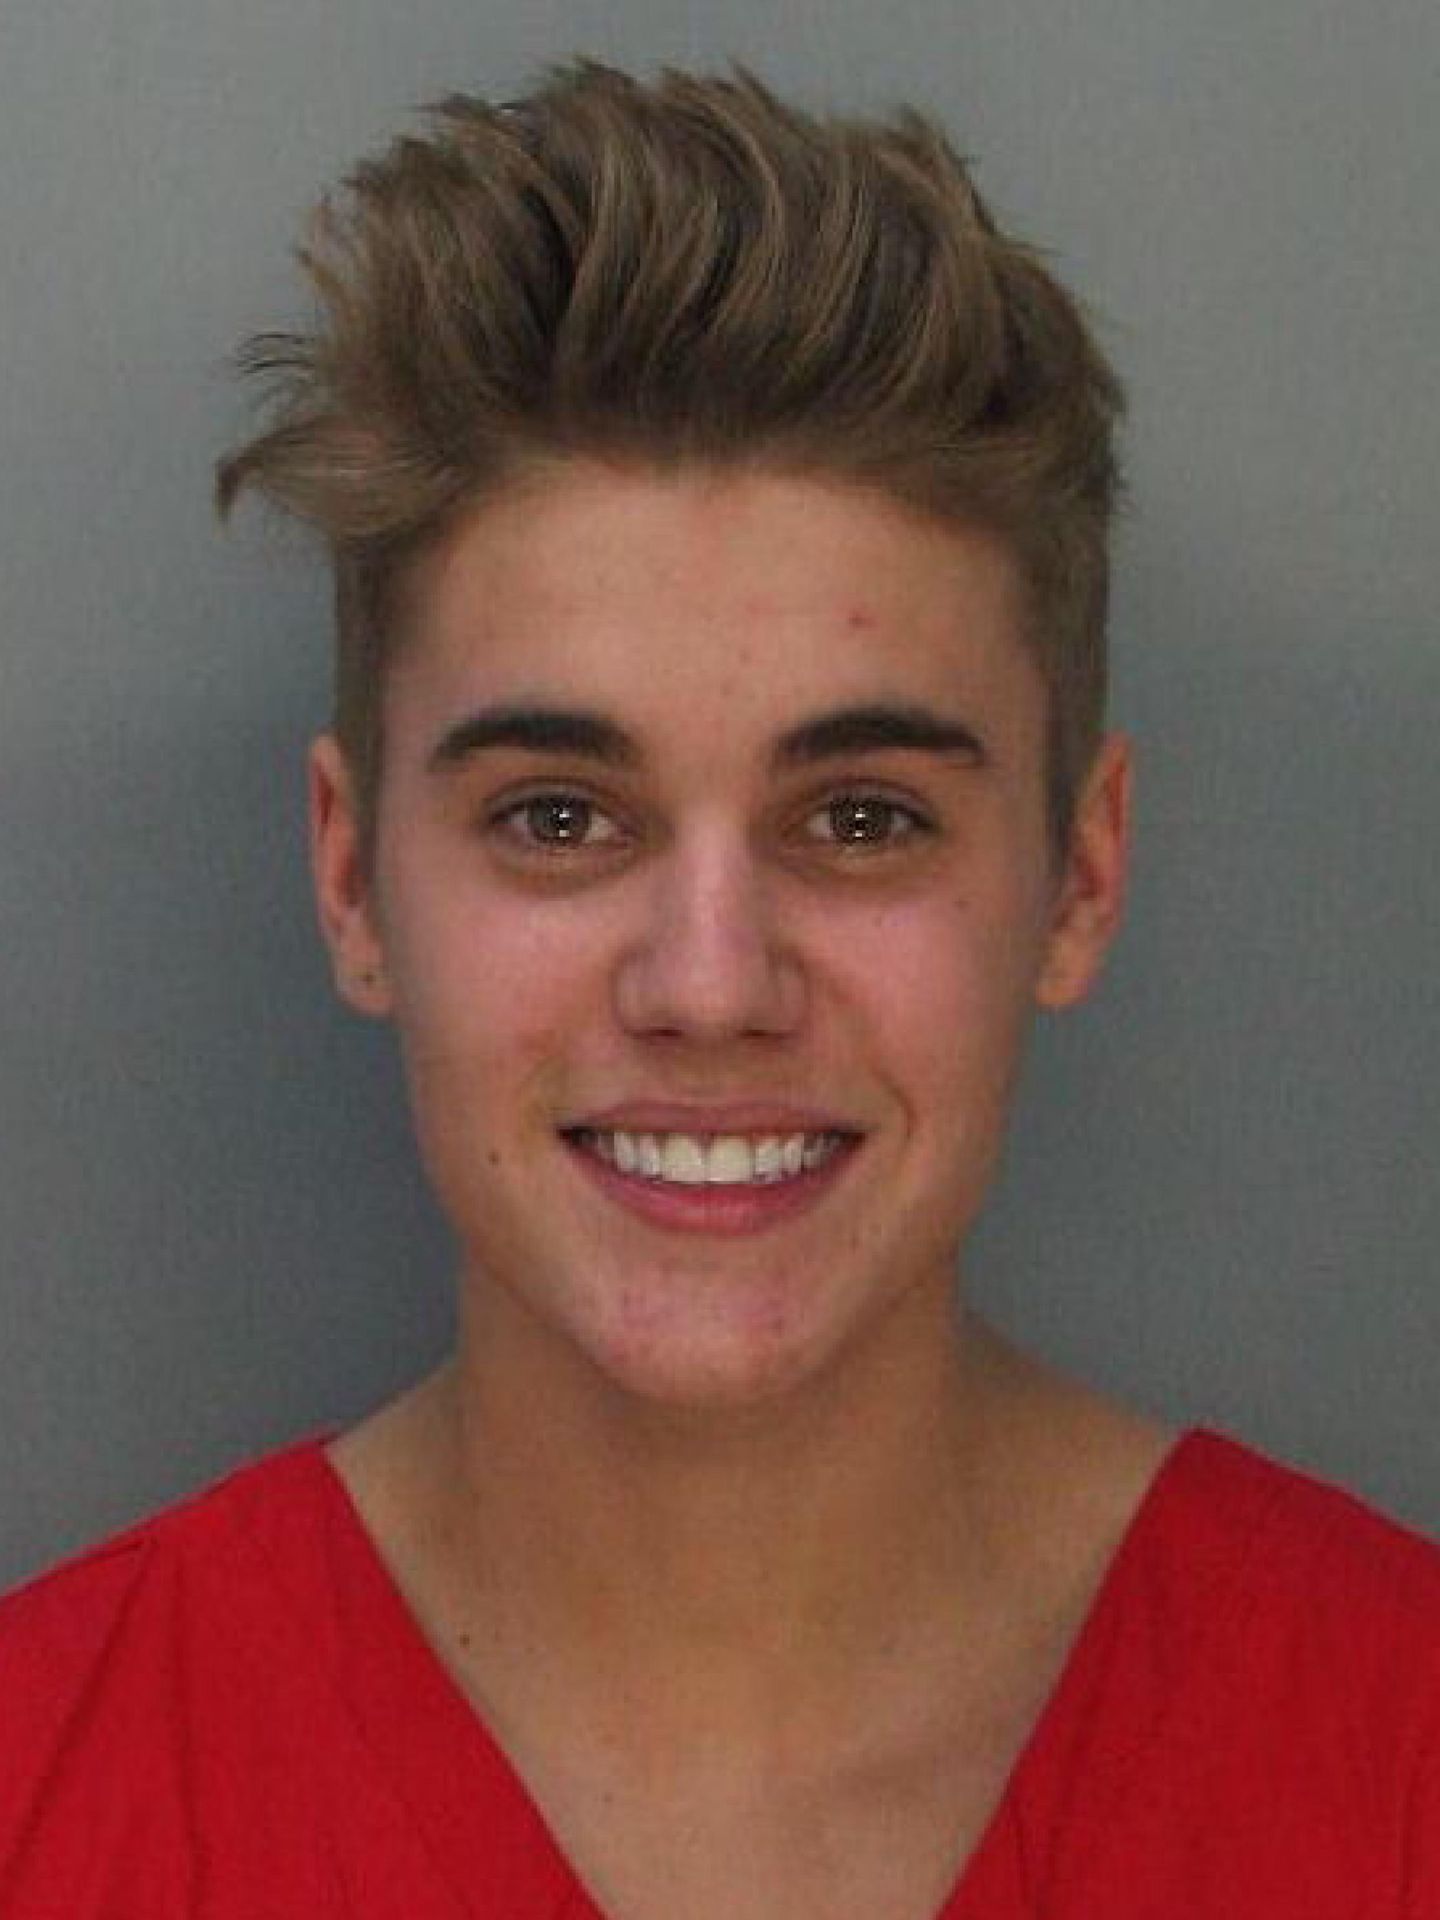 Fotografía de Justin Bieber, quien fue arrestado en Miami. (EFE/Dade County Corrections)